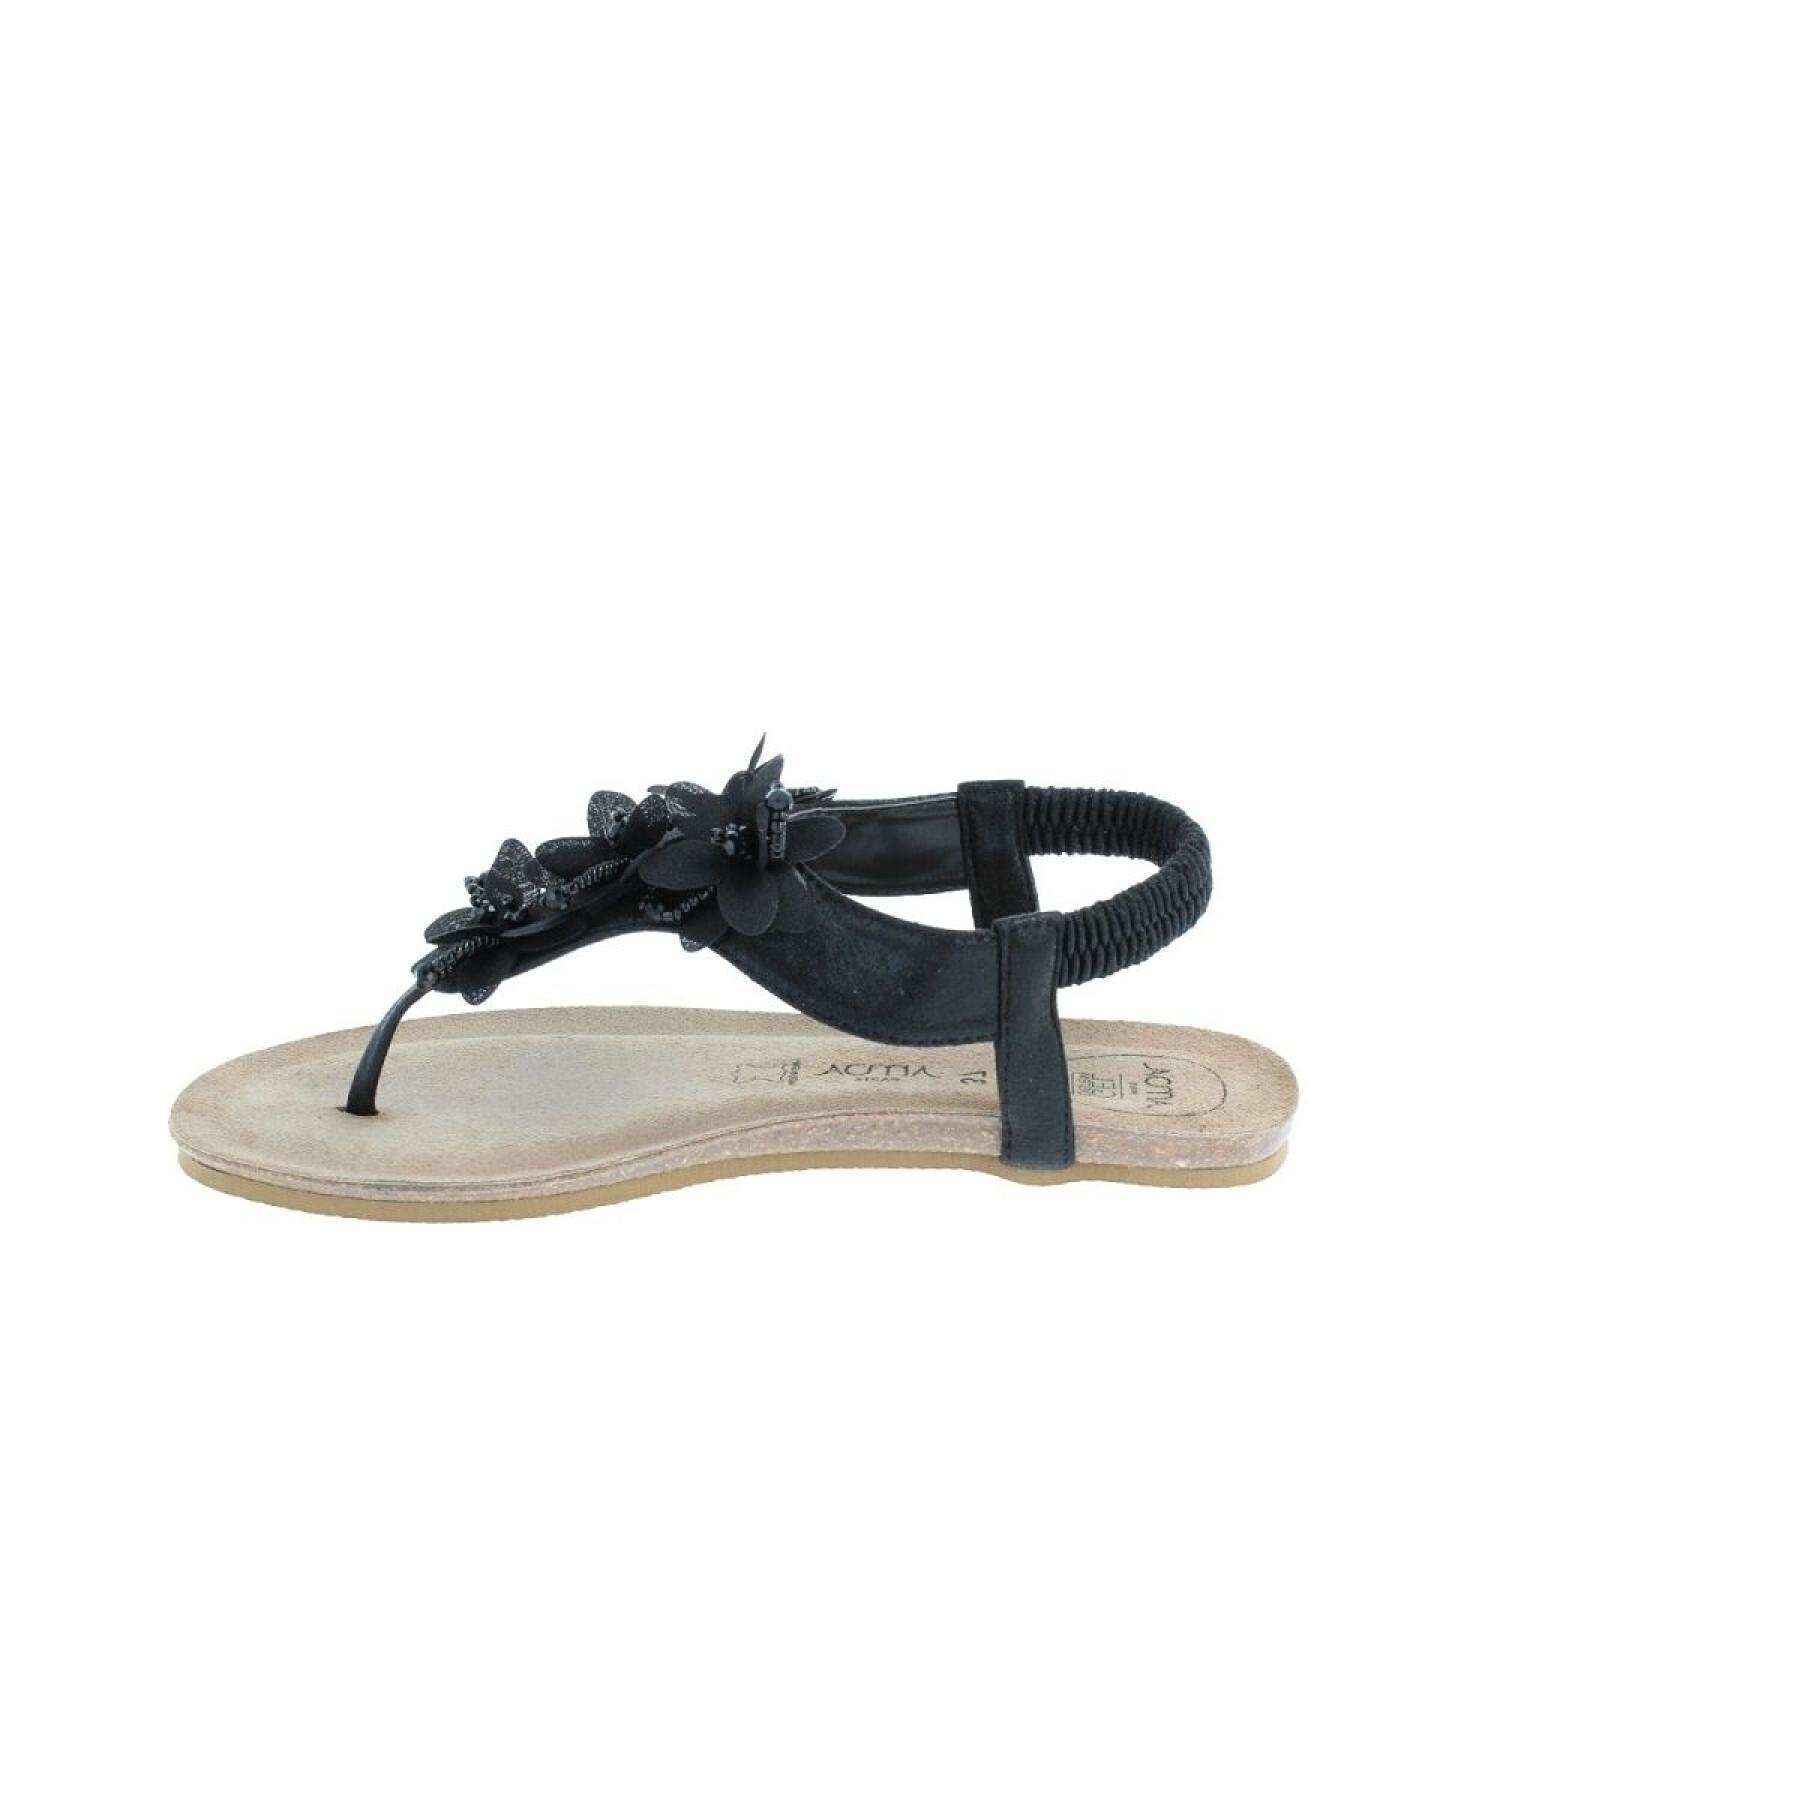 Women's sandals Amoa Balli